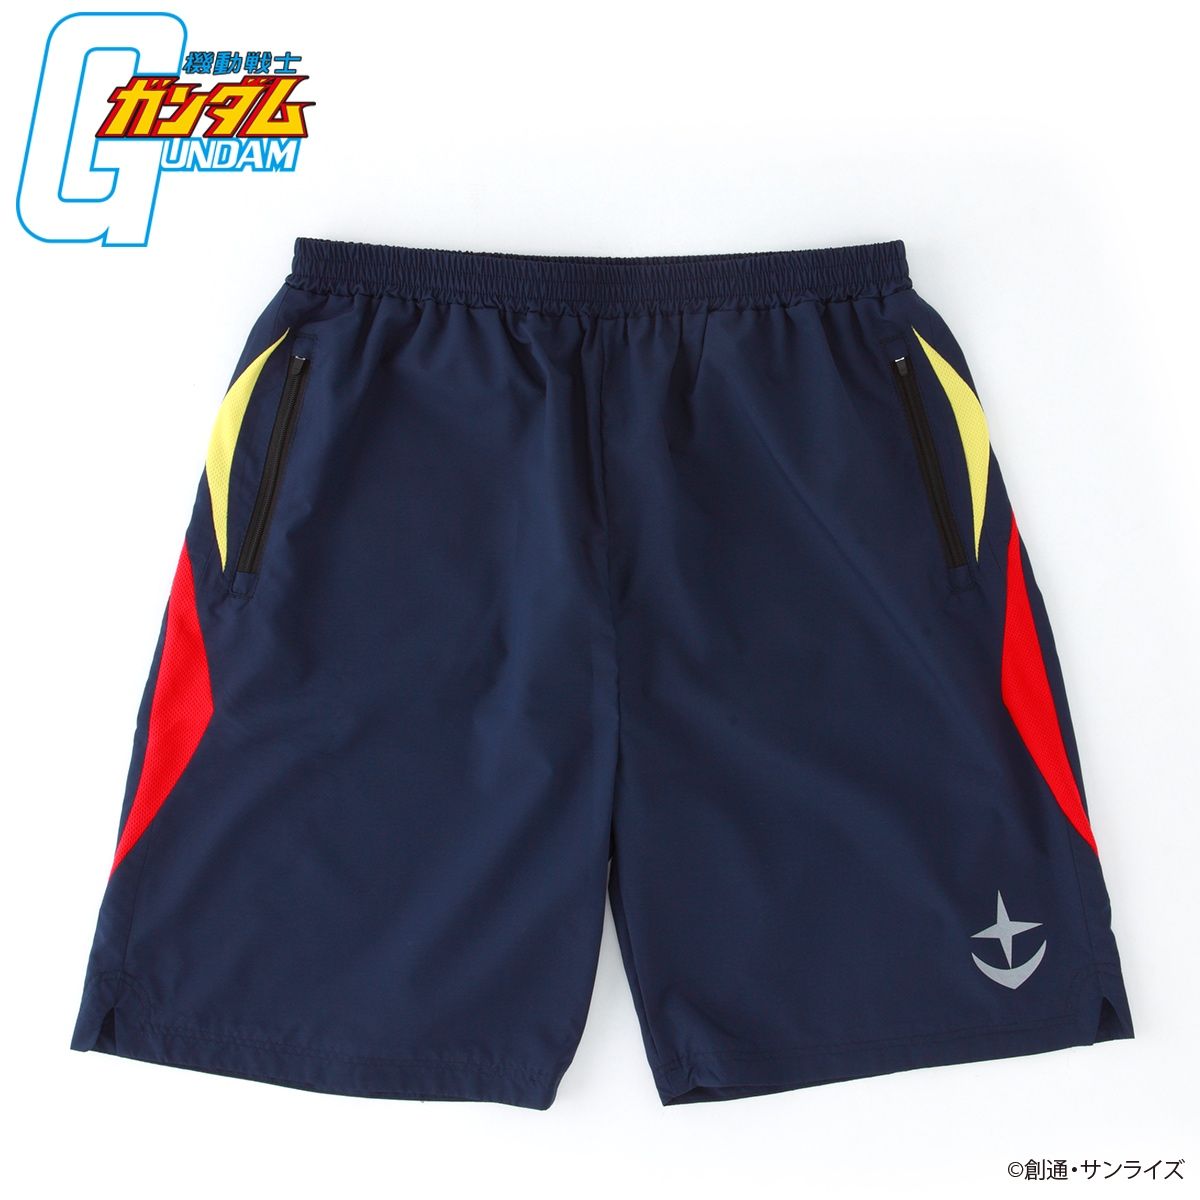 Mobile Suit Gundam Sportswear